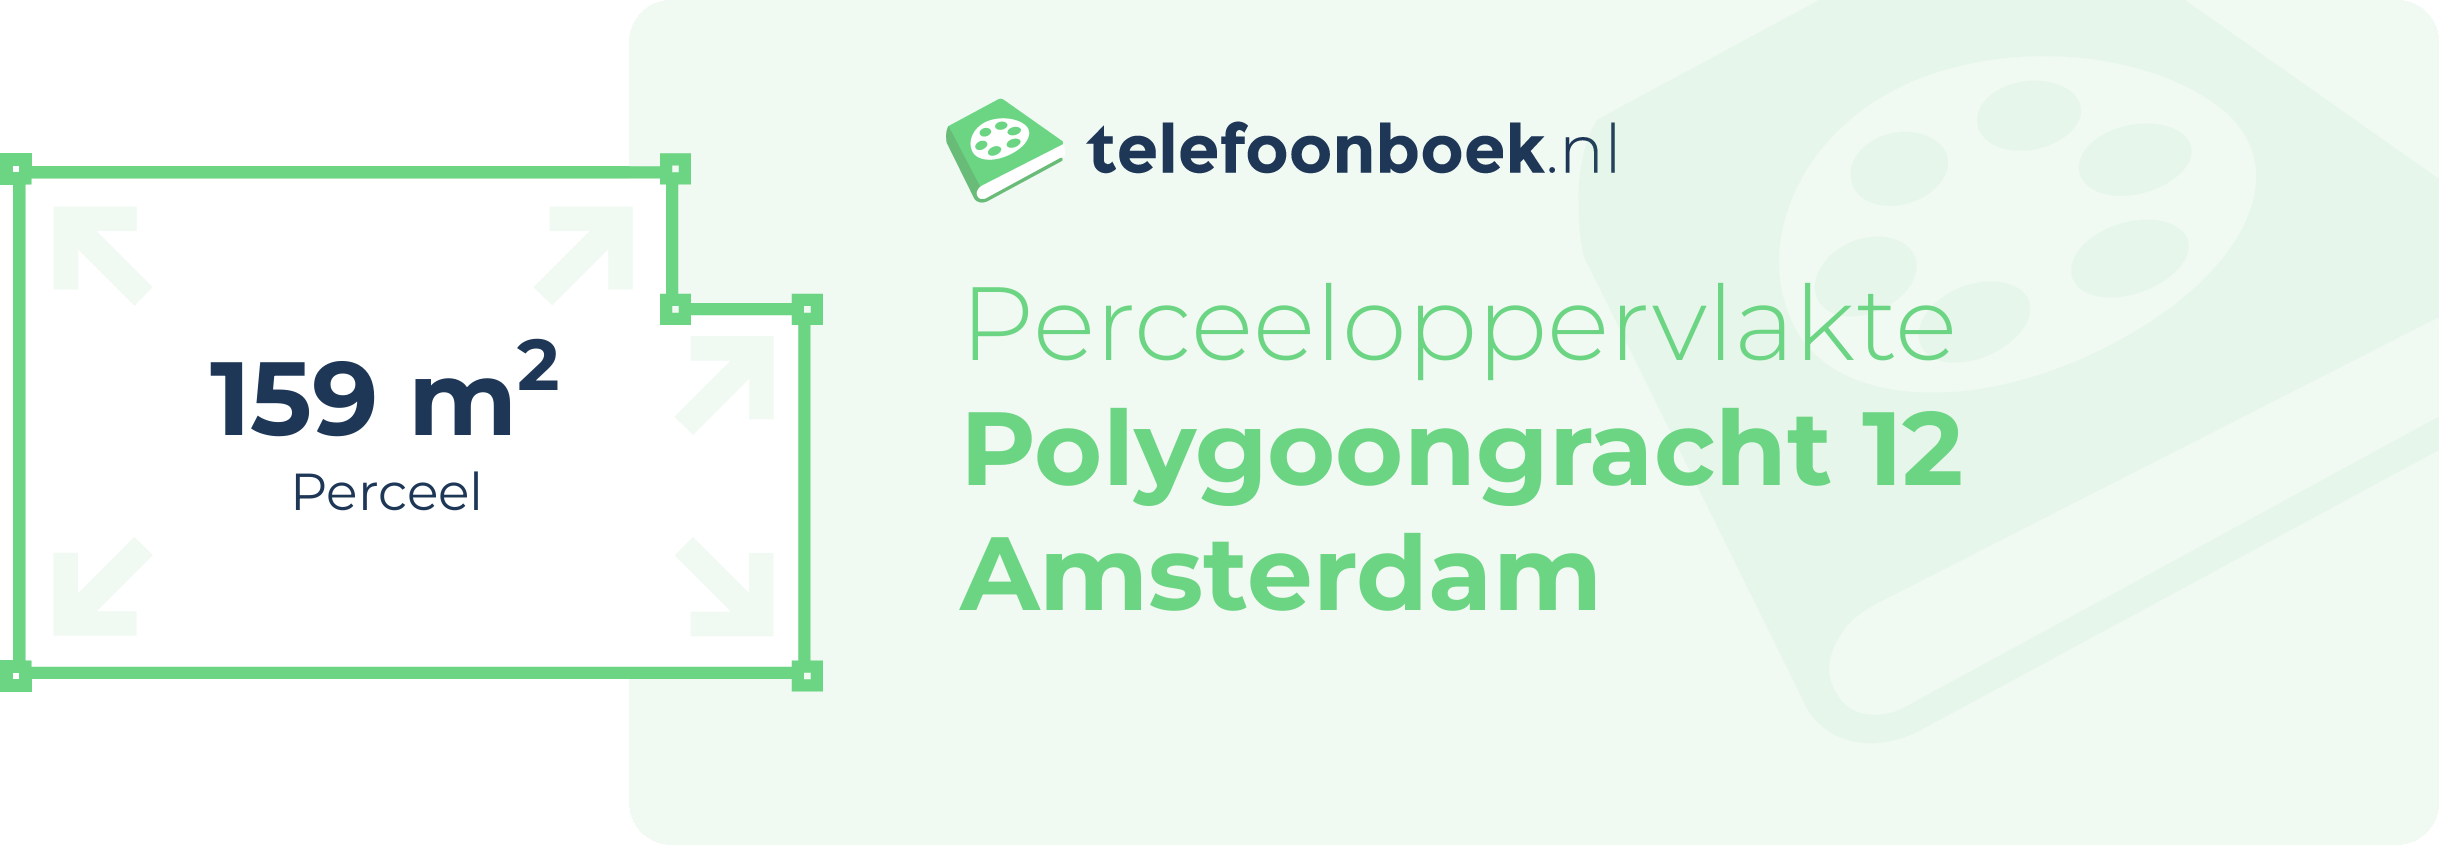 Perceeloppervlakte Polygoongracht 12 Amsterdam